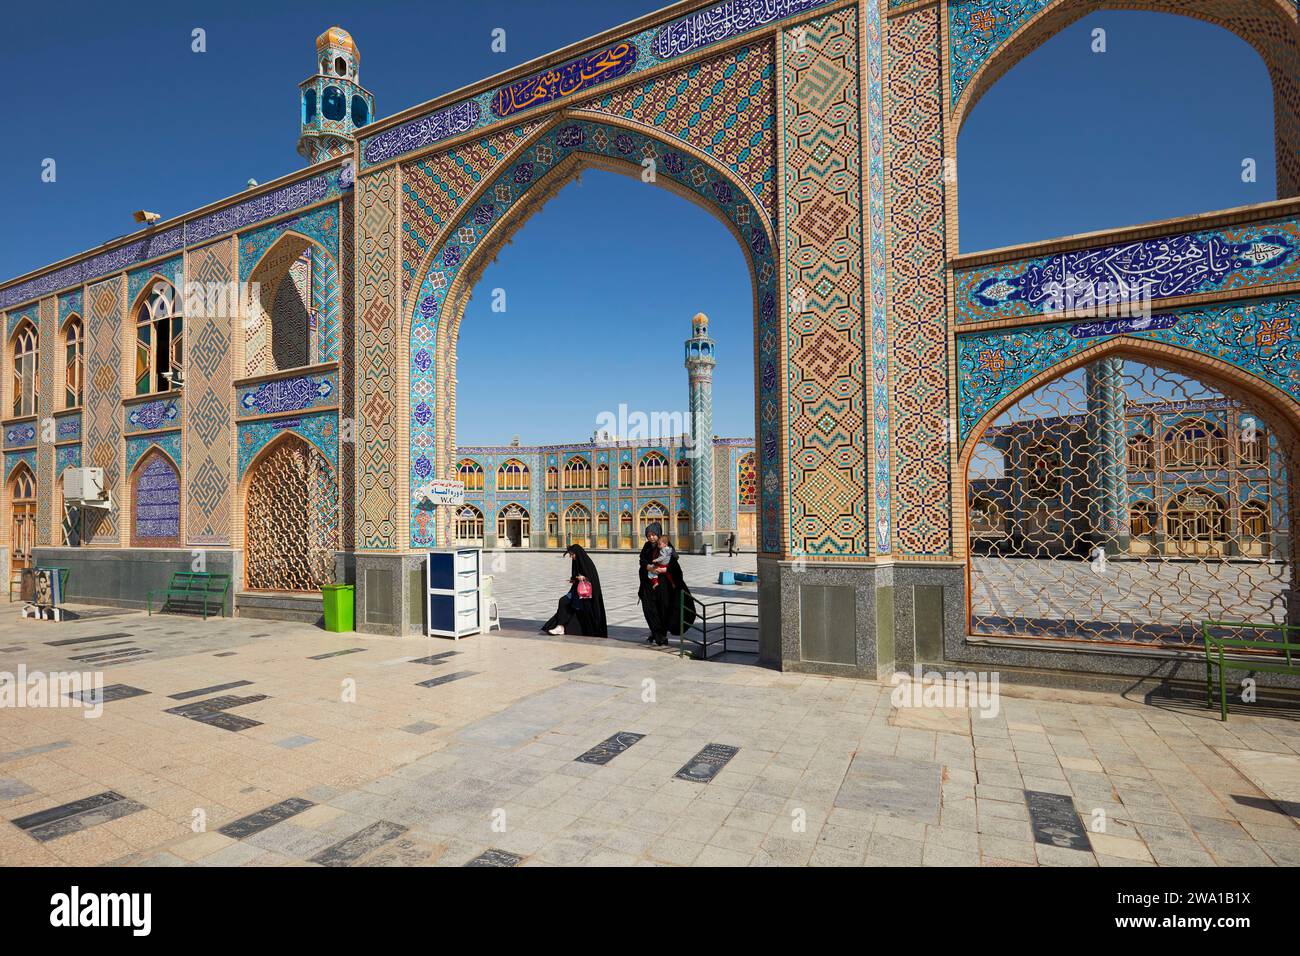 Les femmes marchent à travers une arche dans le sanctuaire Emamzade Mohammed Helal bin Ali. Aran o Bidgol, Iran. Banque D'Images